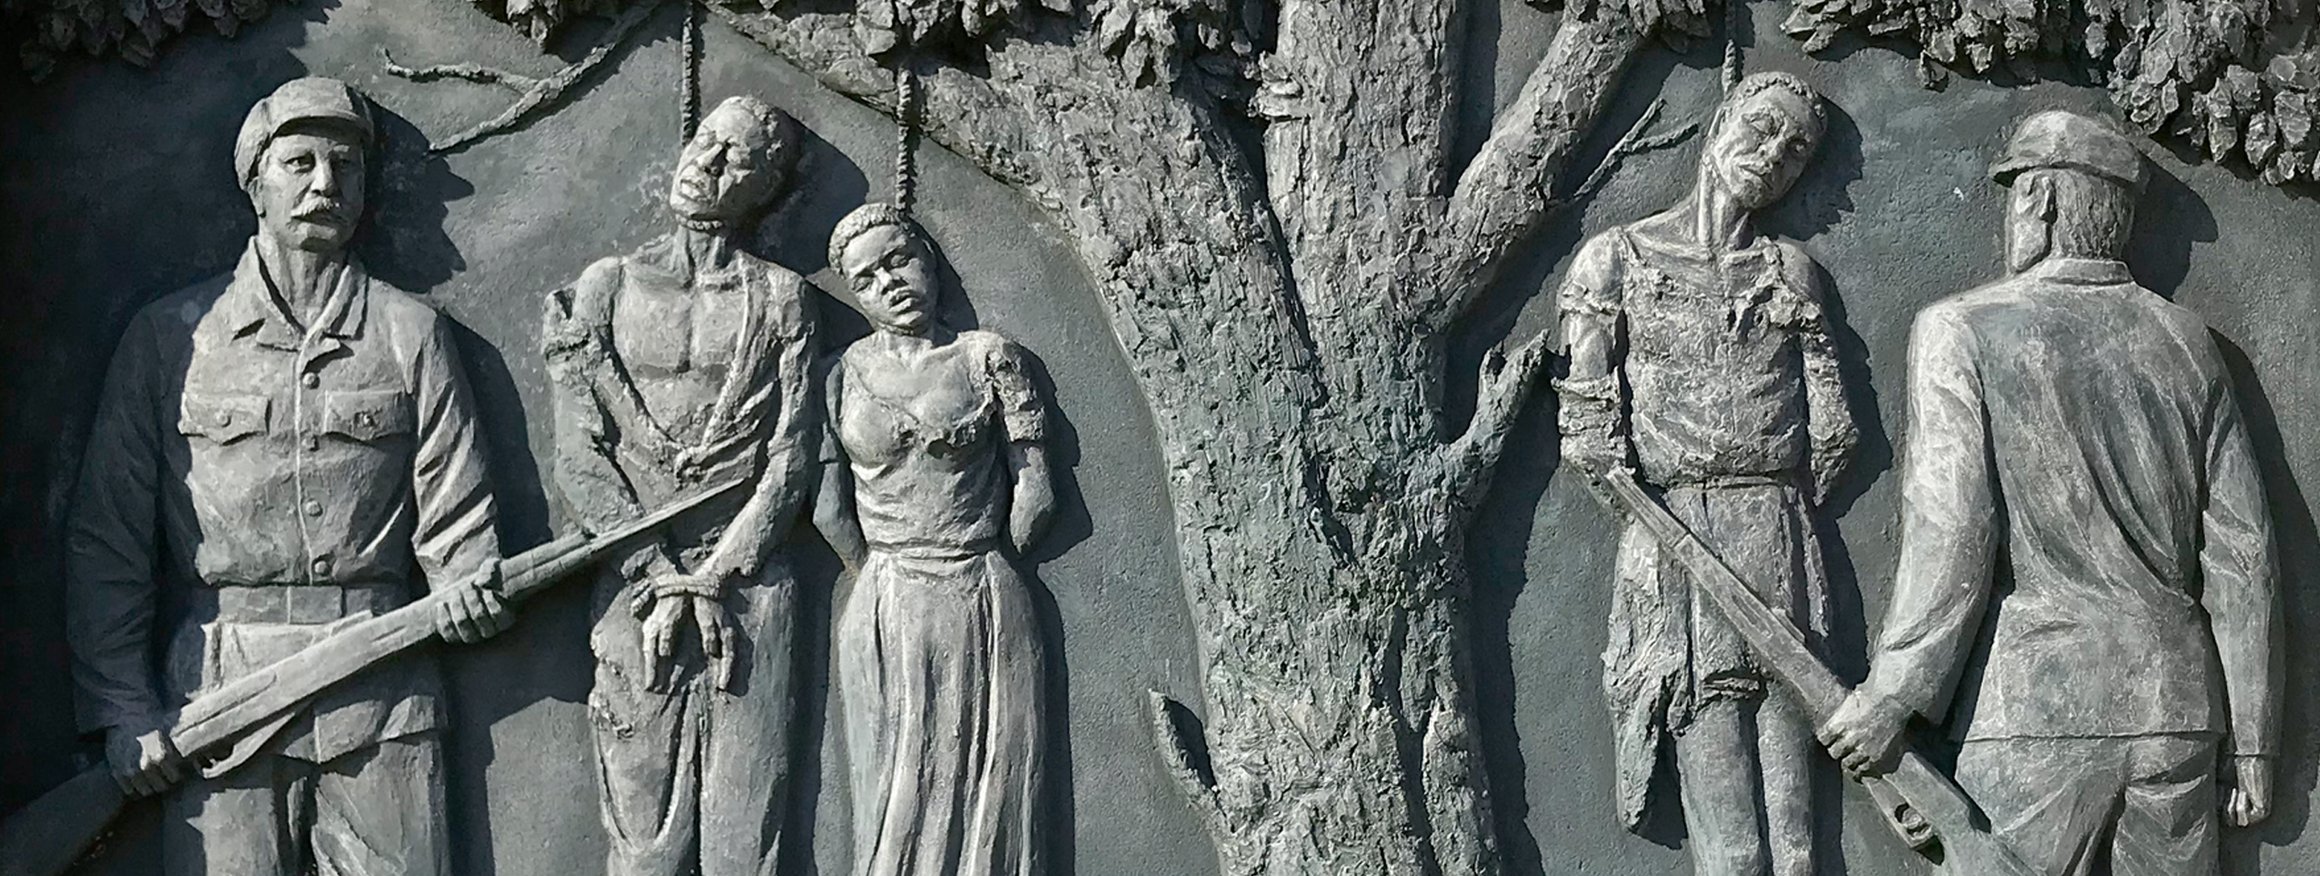 Das Bild zeigt einen Ausschnitt aus einem Denkmal in Windhoek zur Erinnerung an den von deutschen Kolonialgruppen begangenen Völkermord an den Herero und Nama